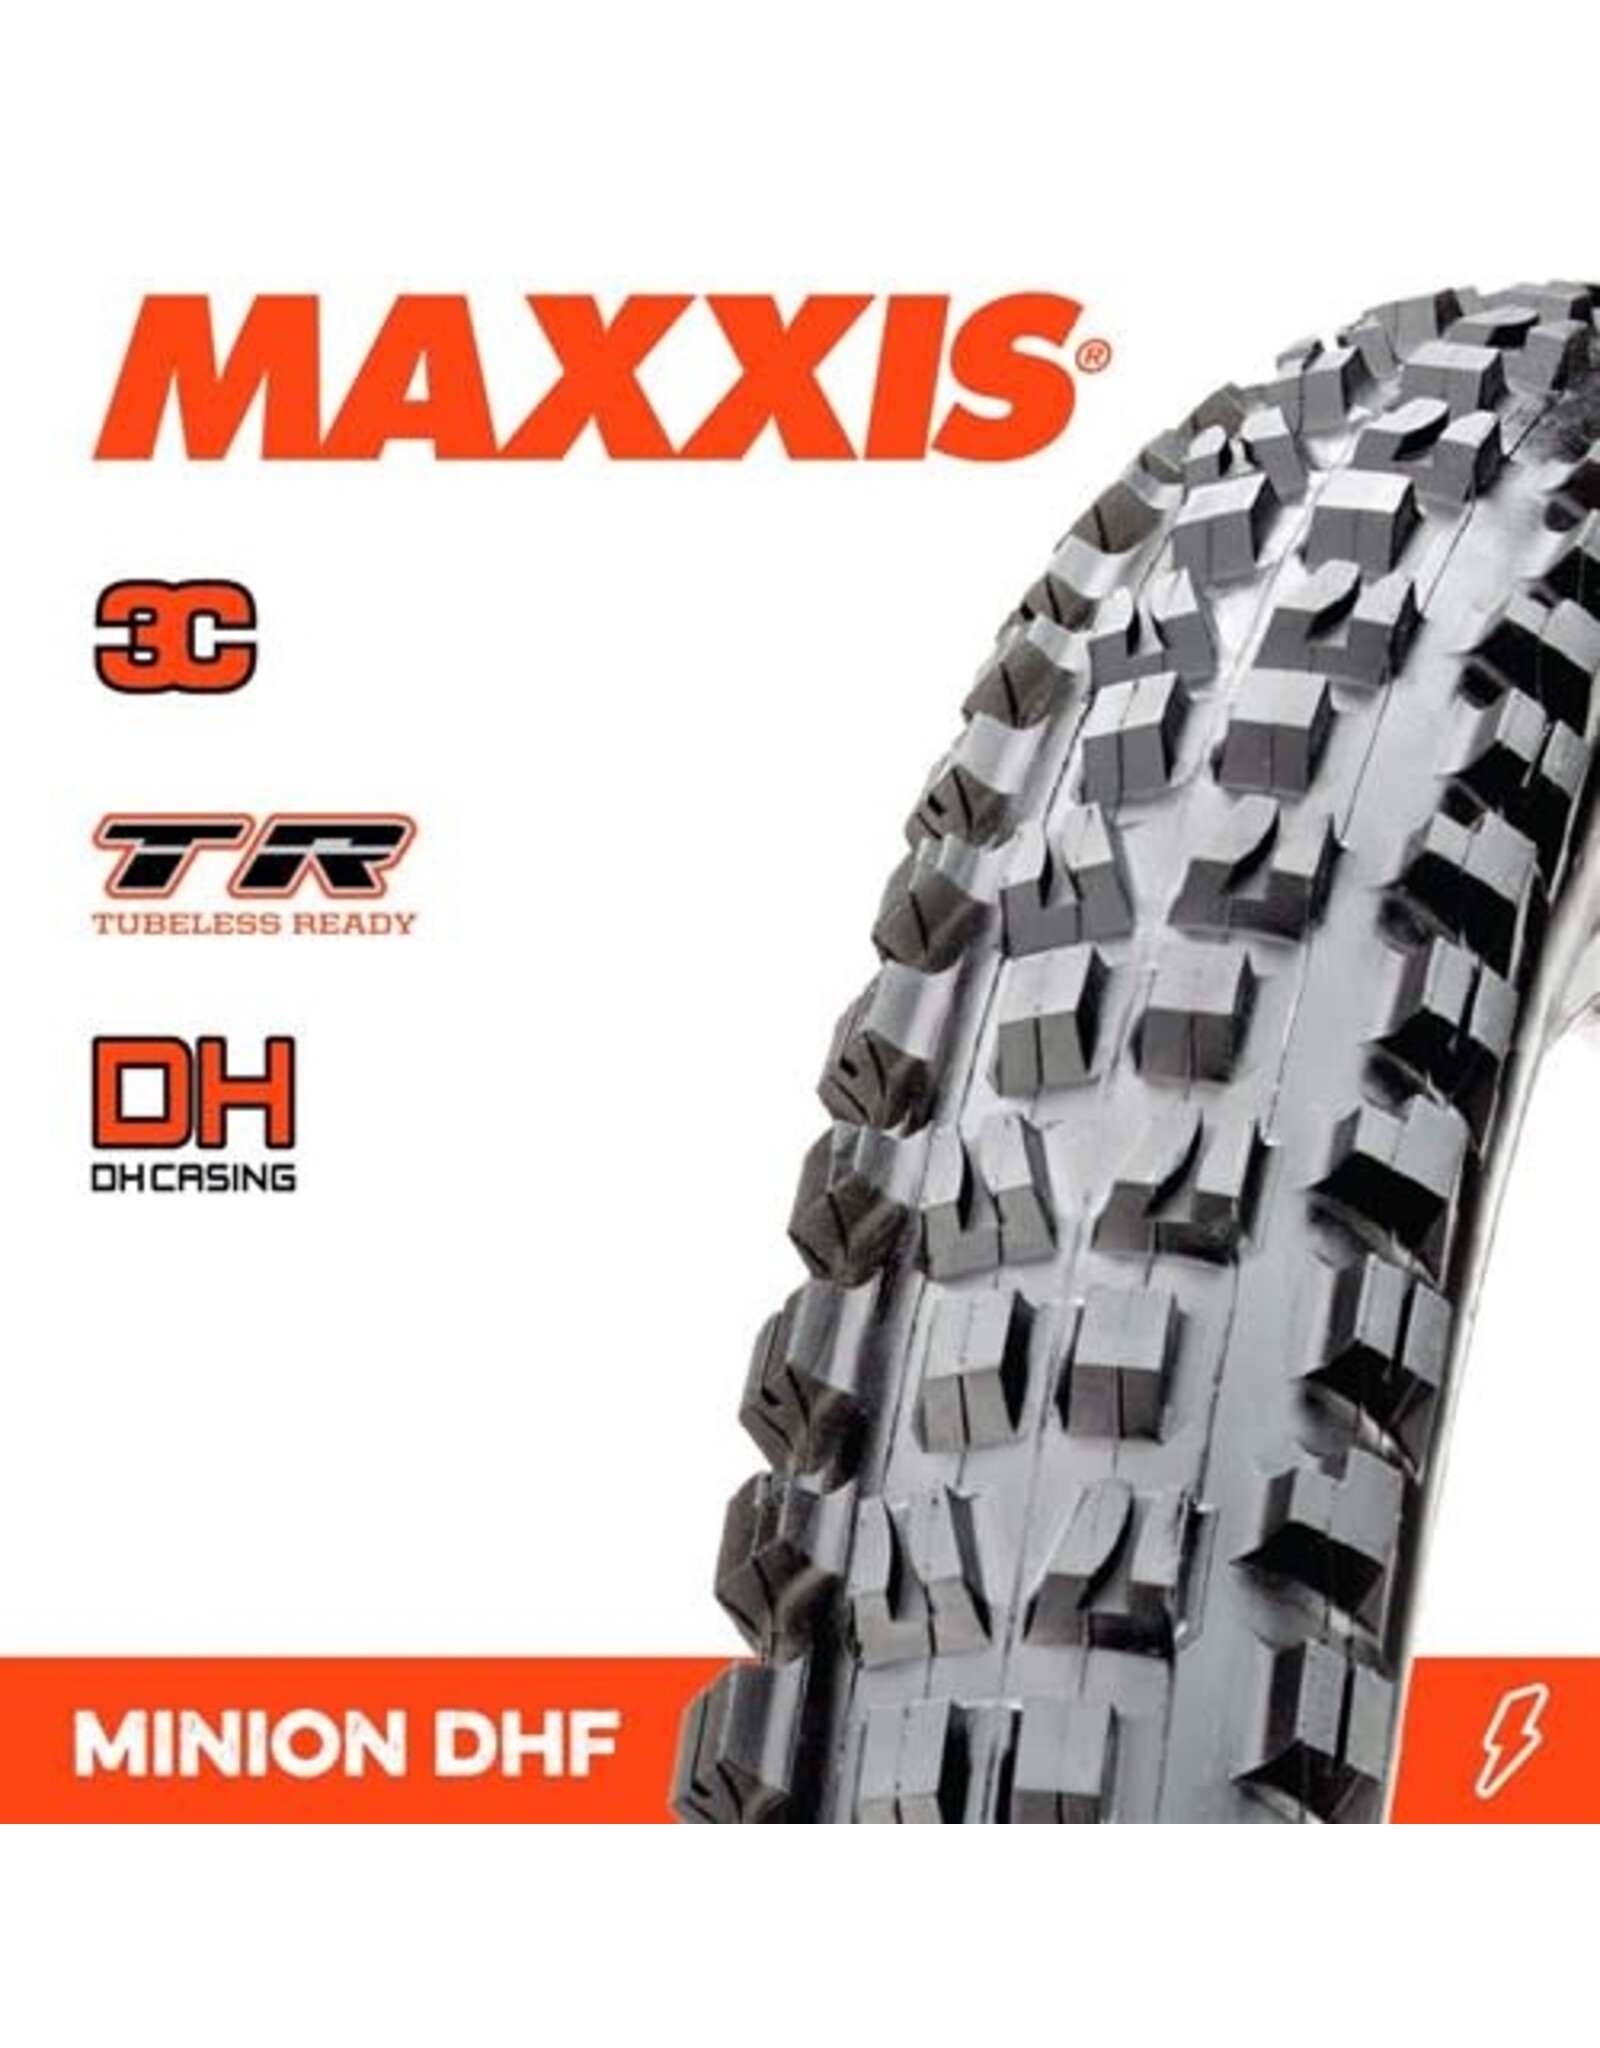 MAXXIS MAXXIS MINION DHF 27.5 X 2.50” TR DH 3C MAXX GRIP FOLD 60TPI TYRE